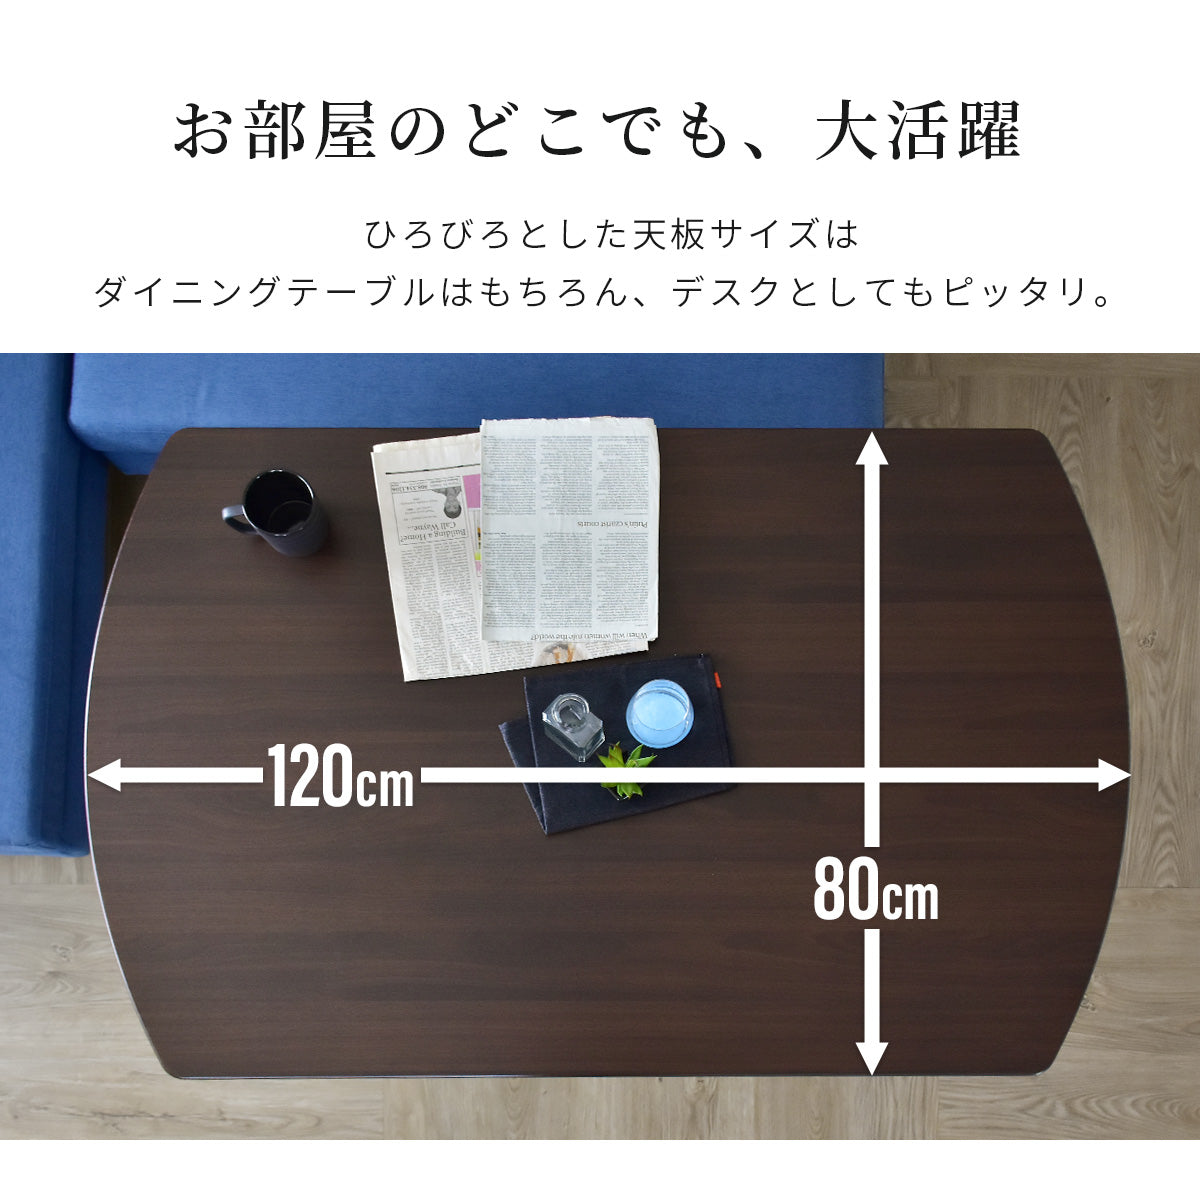 武田コーポレーション サイドテーブル・昇降式・コンセント ブラウン